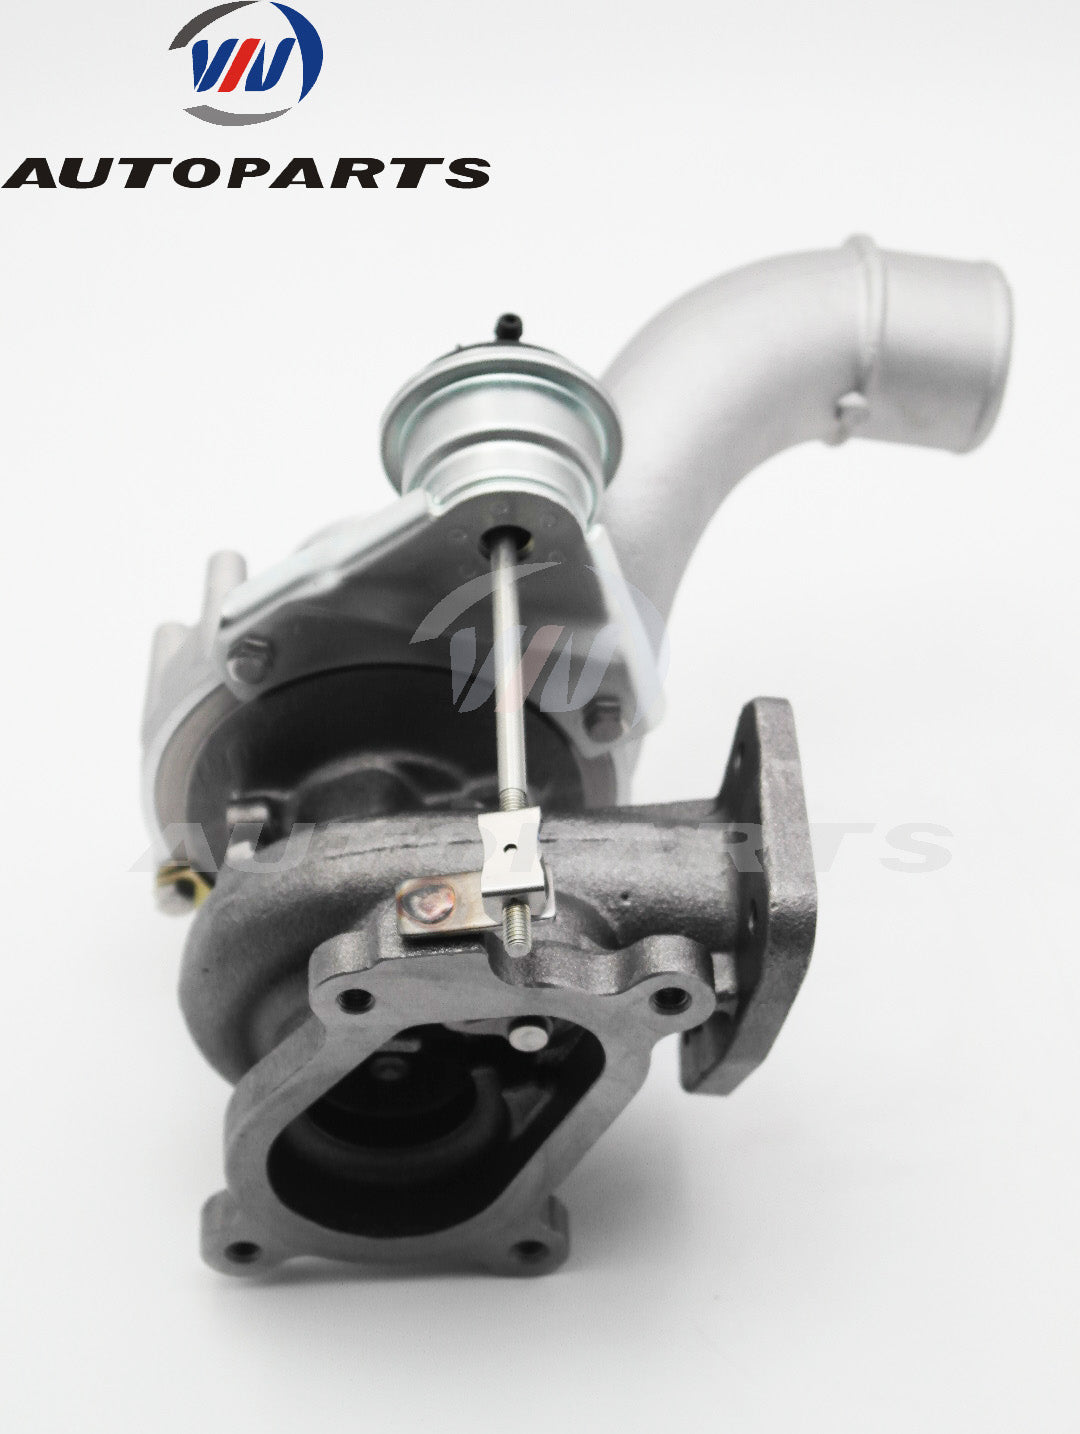 Turbocharger 53039880055 for Opel Renault varies 2.5L Diesel Engine